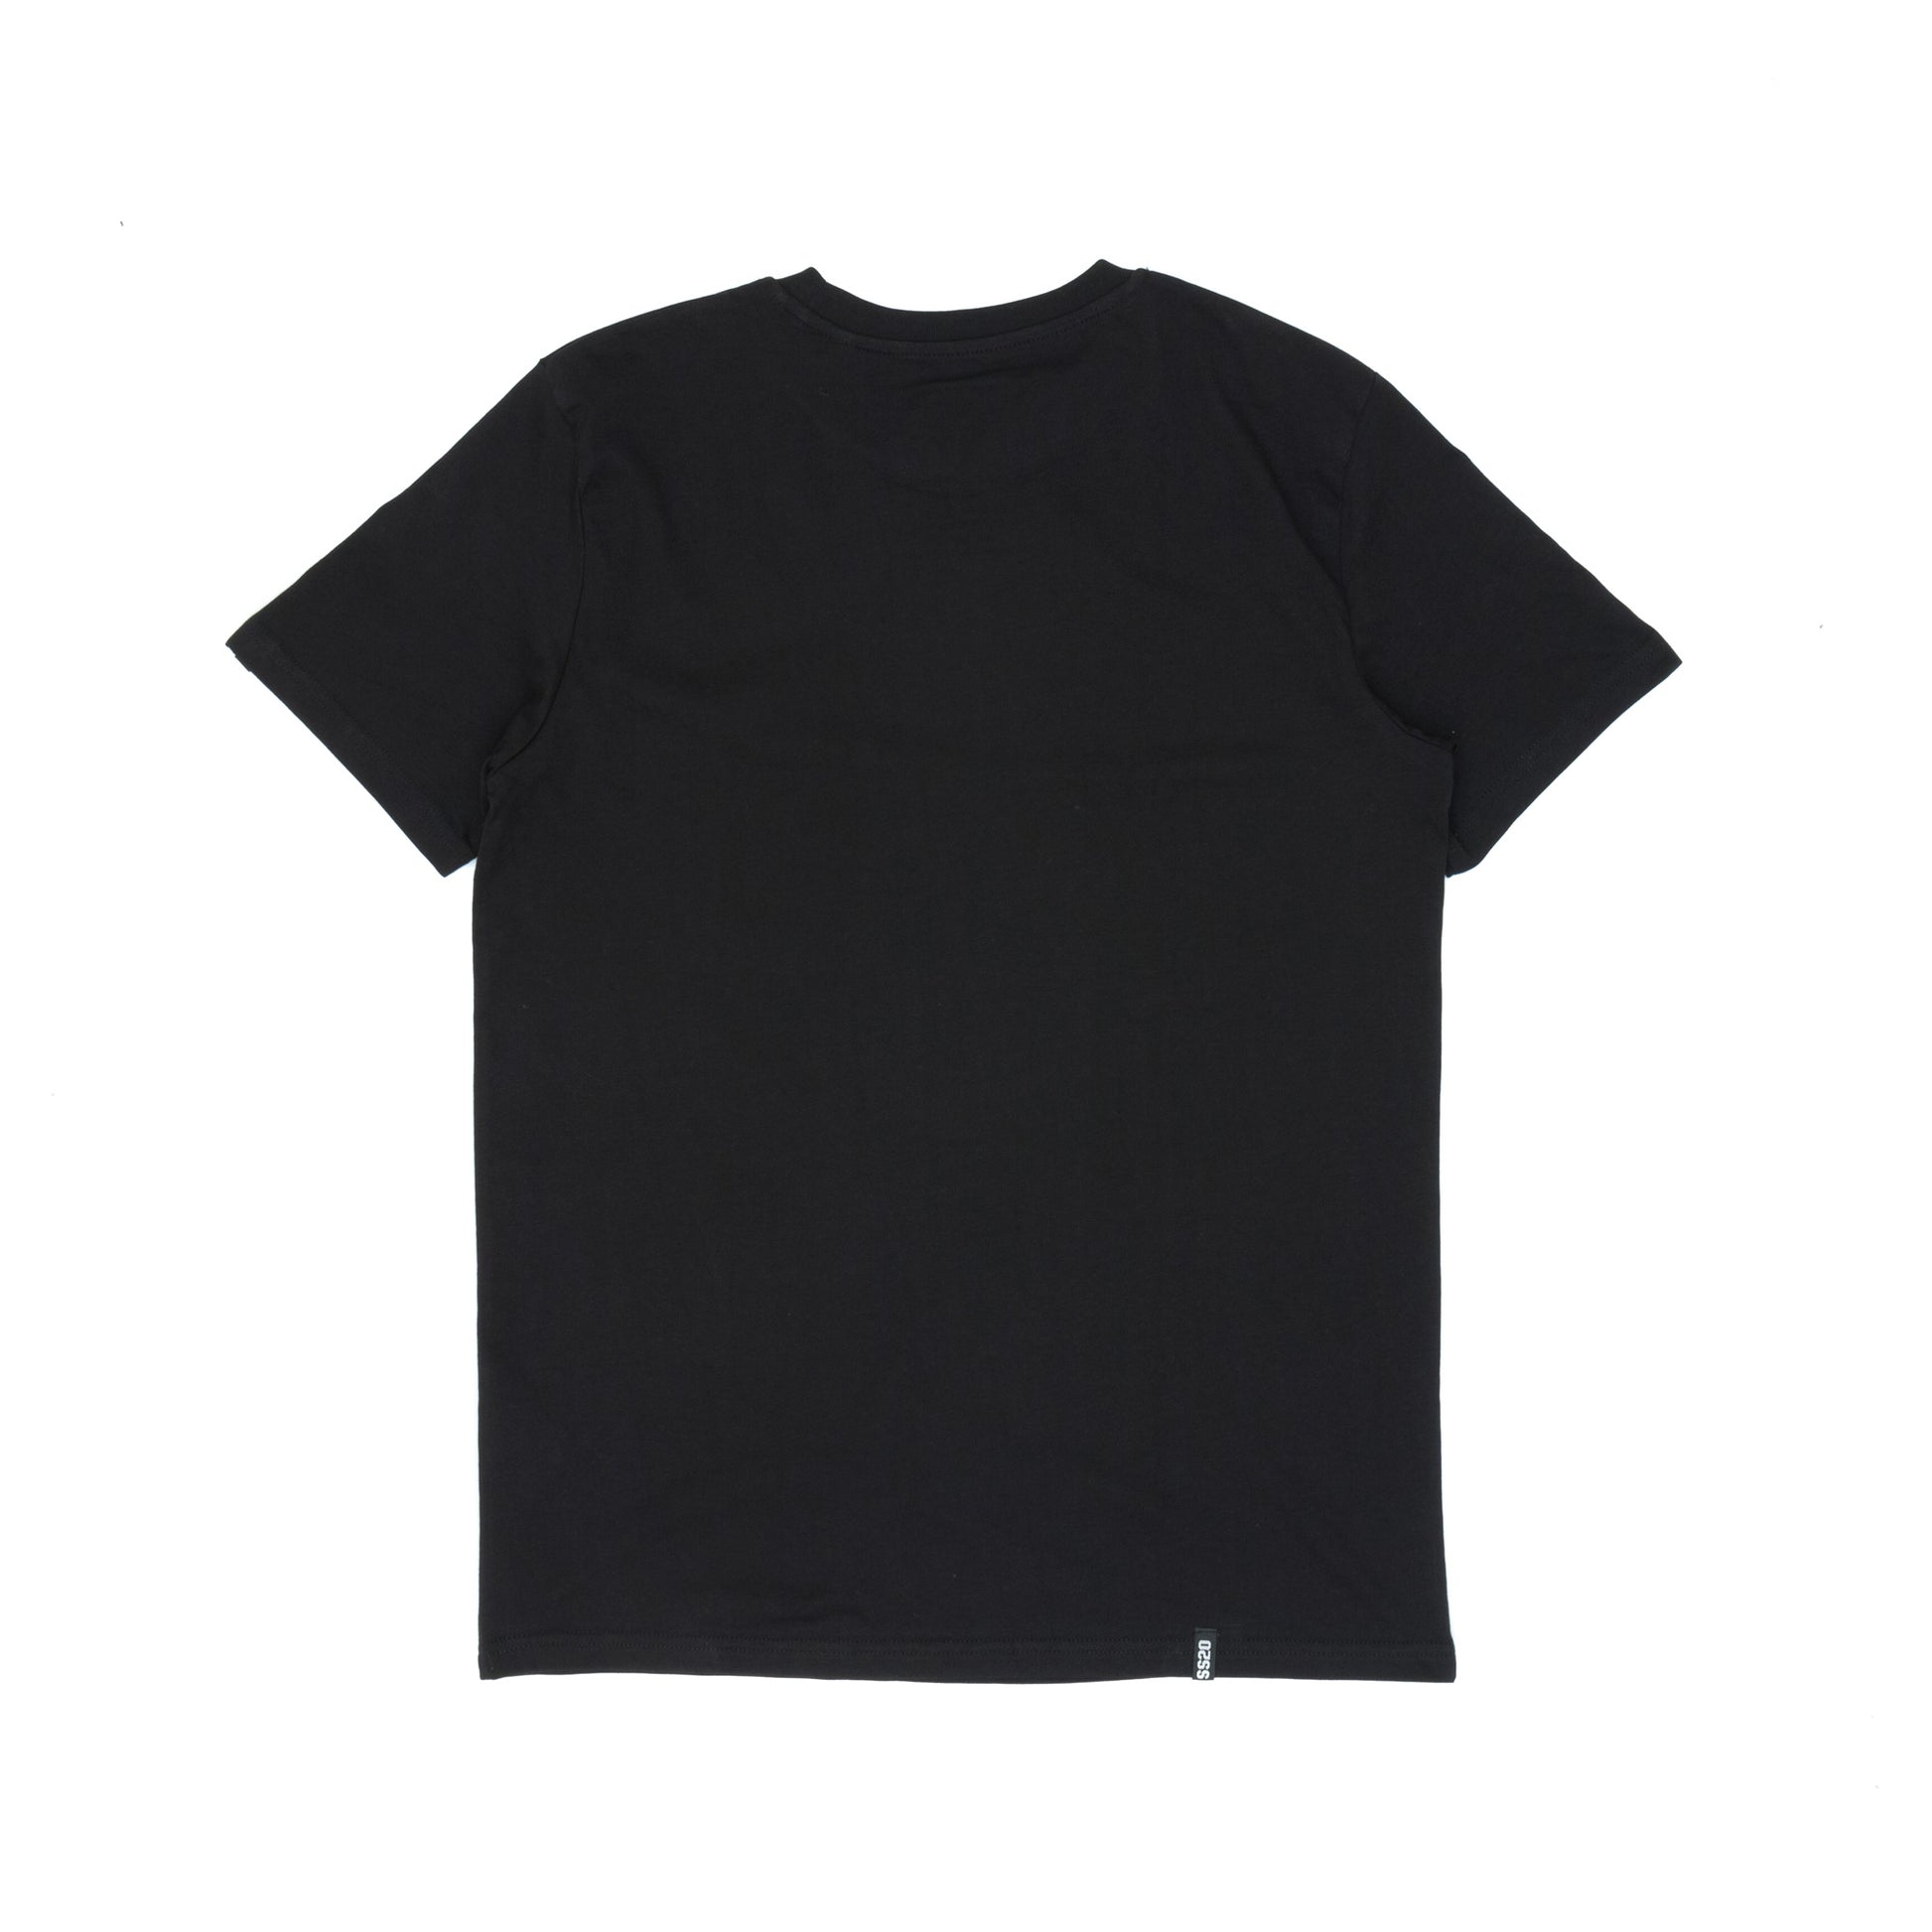 SS20 Barcode T-Shirt - Black